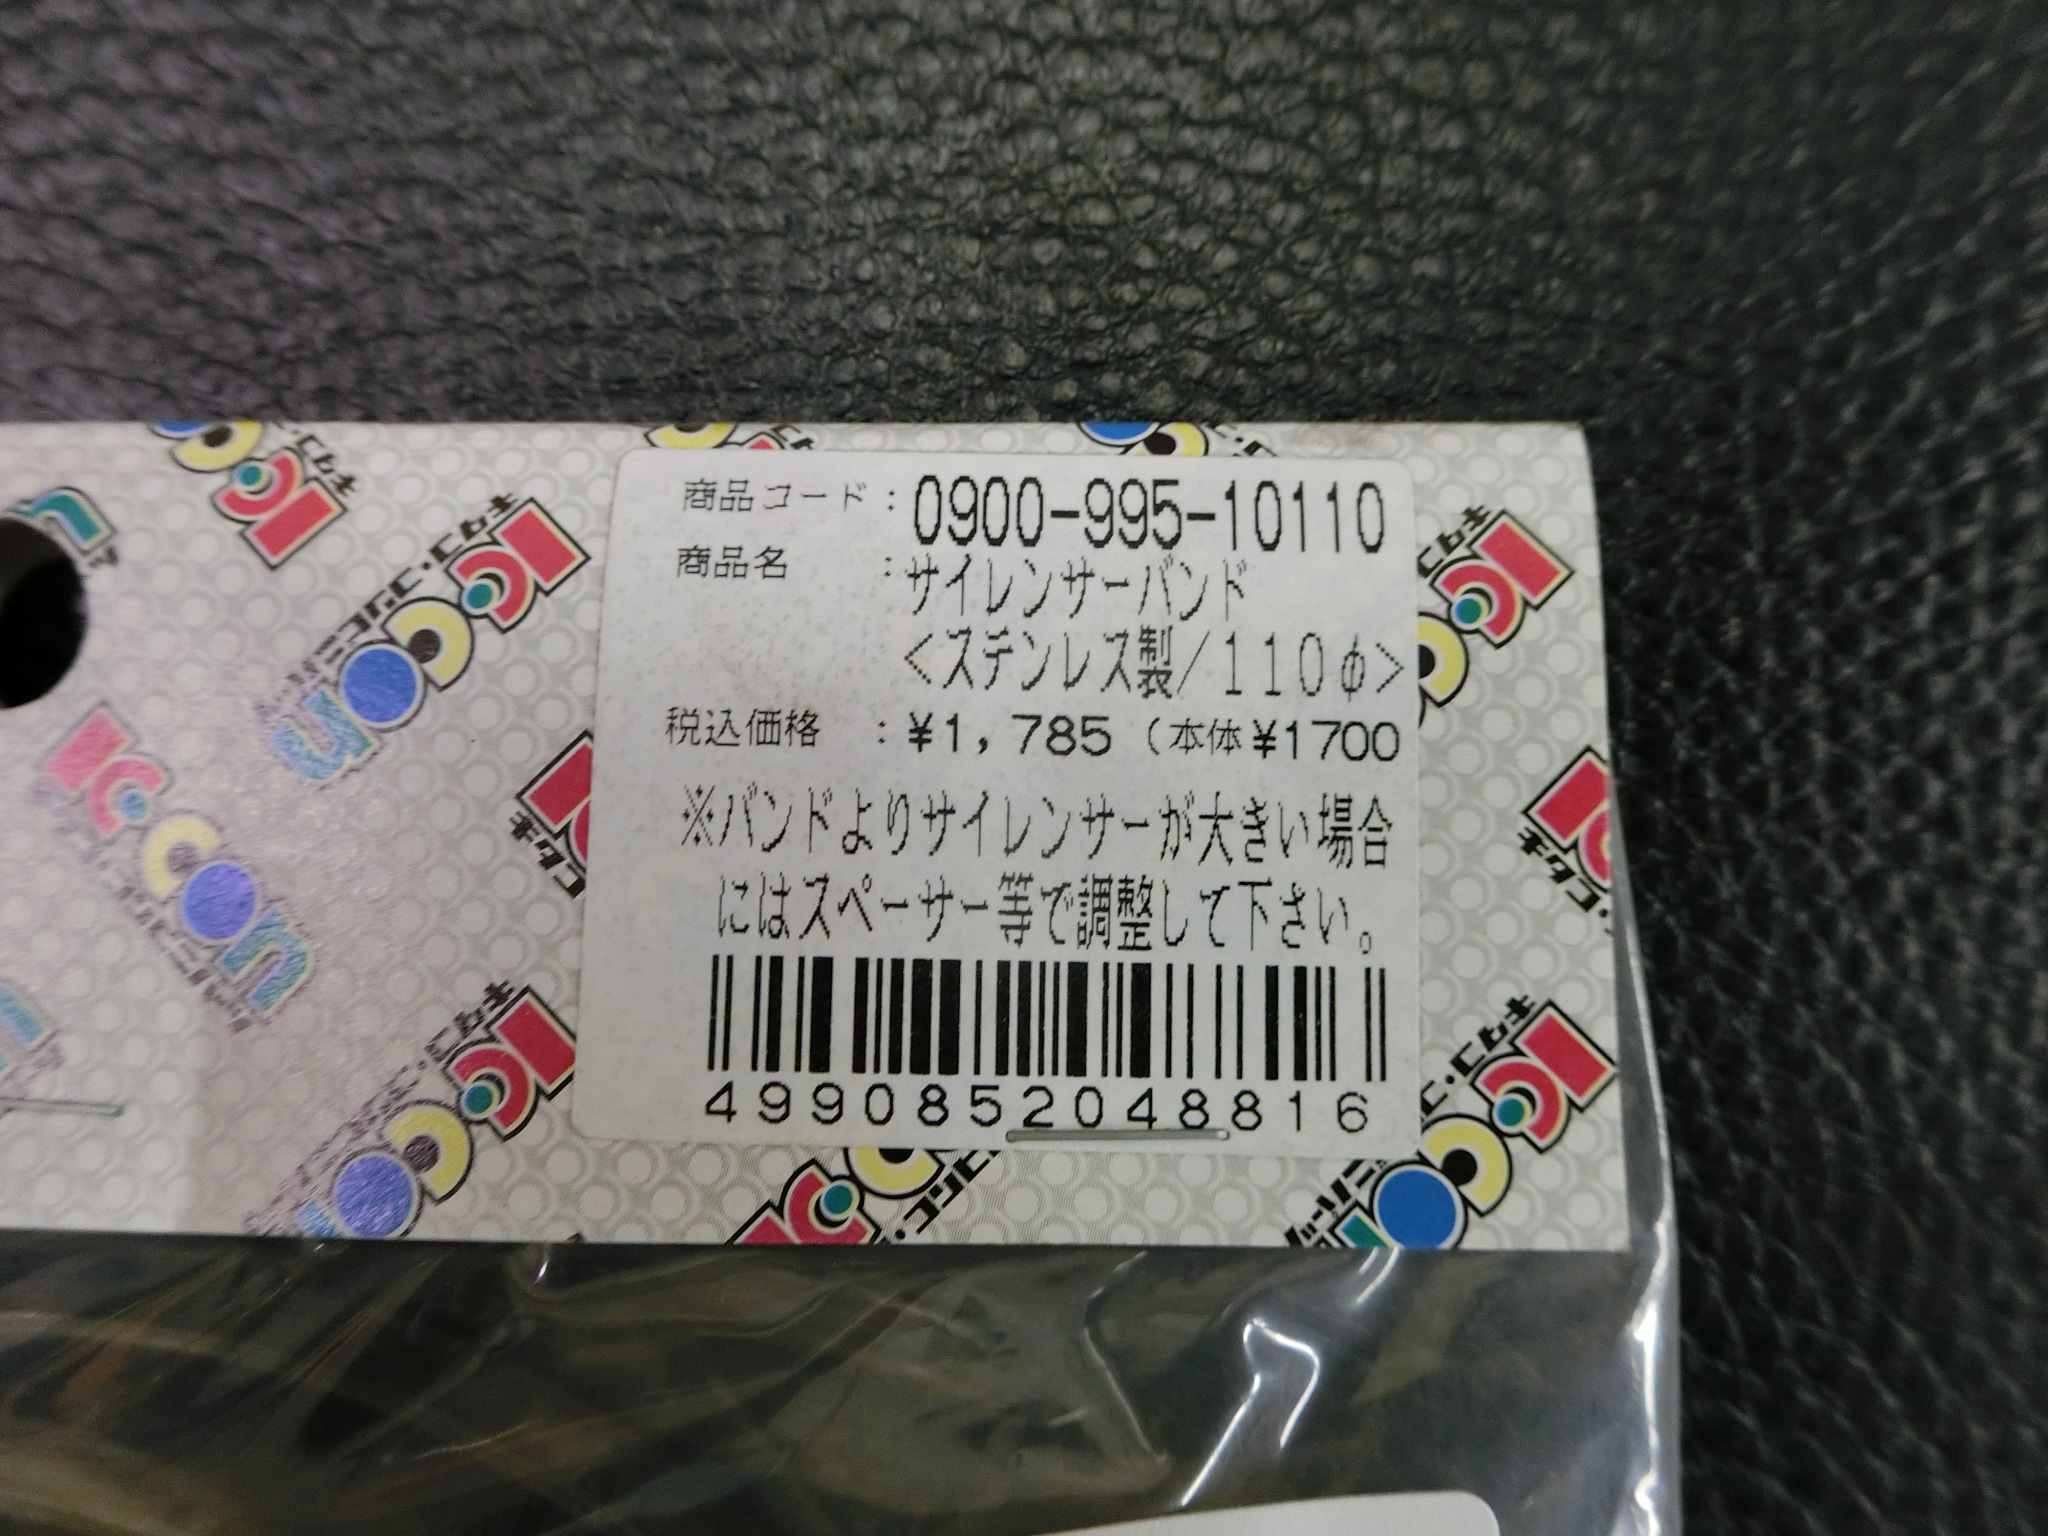  не использовался Kitaco KITACO глушитель частота Ф110 из нержавеющей стали номер товара : 0900-995-10110 управление No.38236